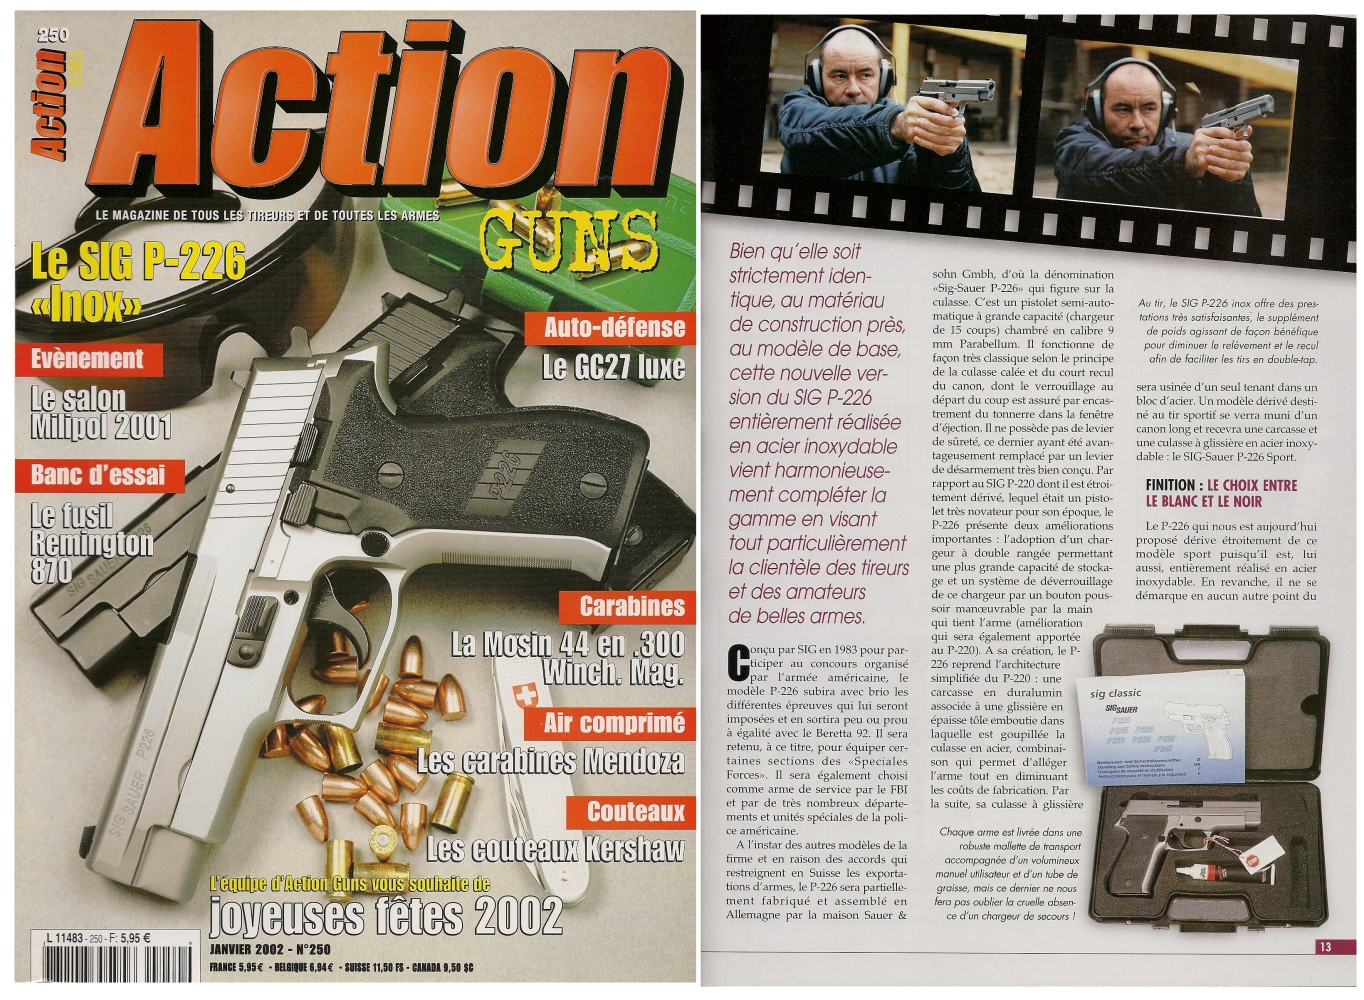 Le banc d’essai du pistolet Sig-Sauer P-226 « inox » a été publié sur 6 pages dans le magazine Action Guns n°250 (janvier 2002). 